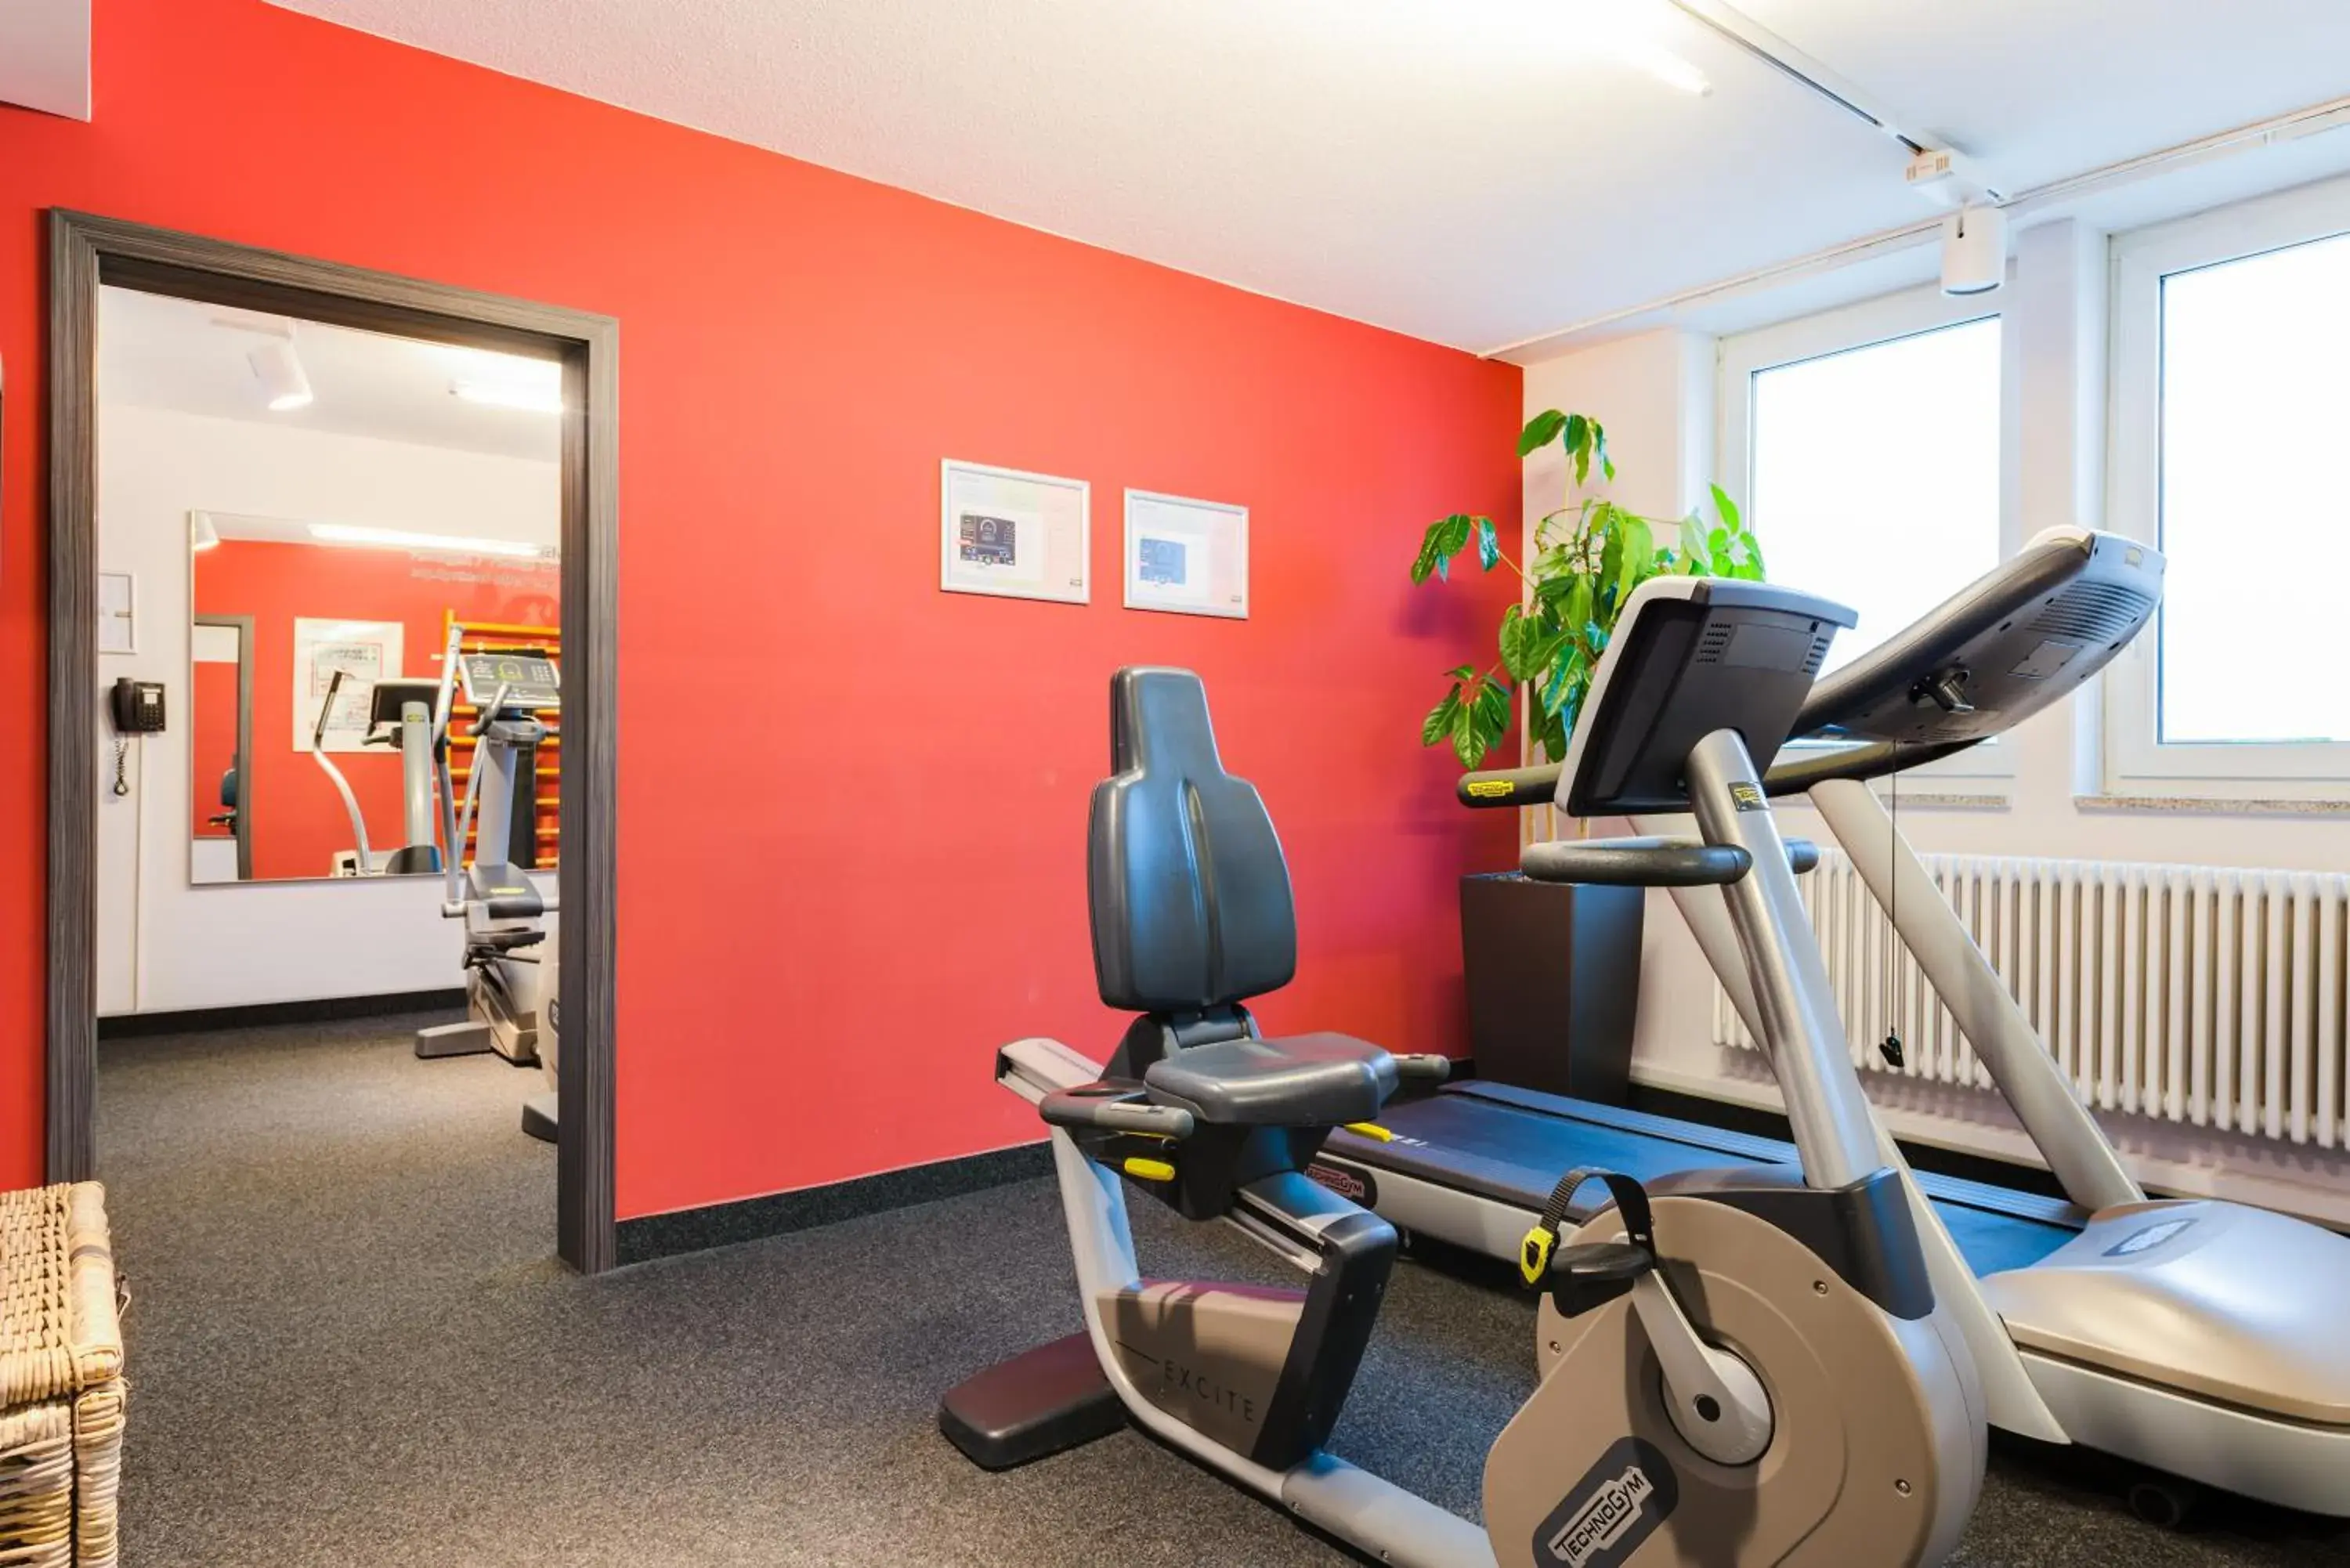 Fitness centre/facilities, Fitness Center/Facilities in Novina Hotel Wöhrdersee Nürnberg City